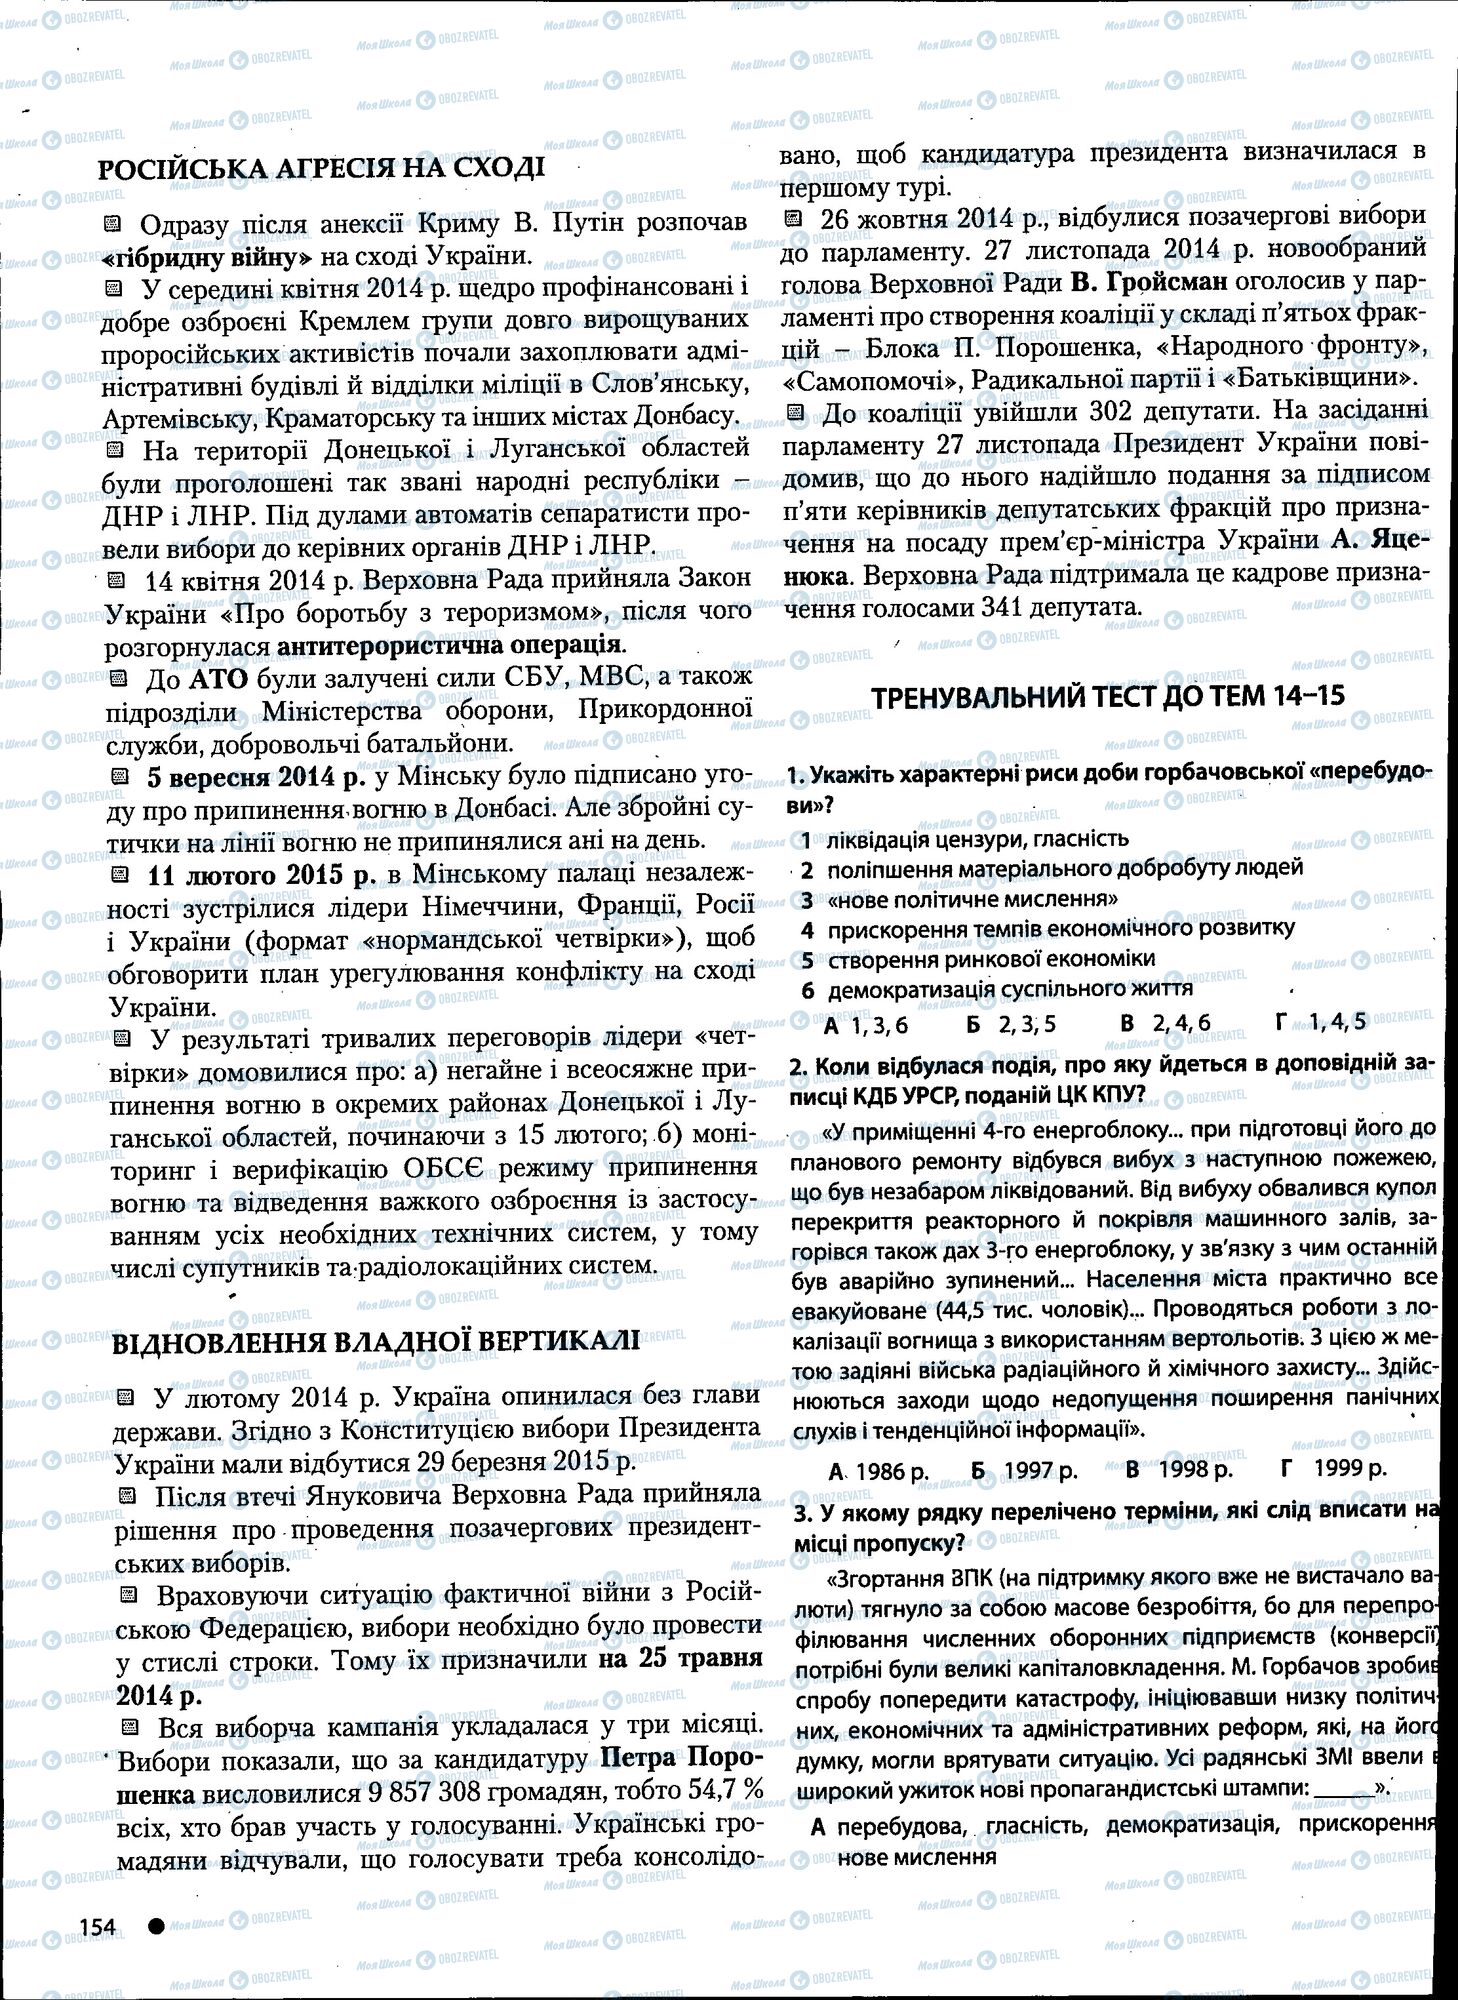 ДПА История Украины 11 класс страница 154